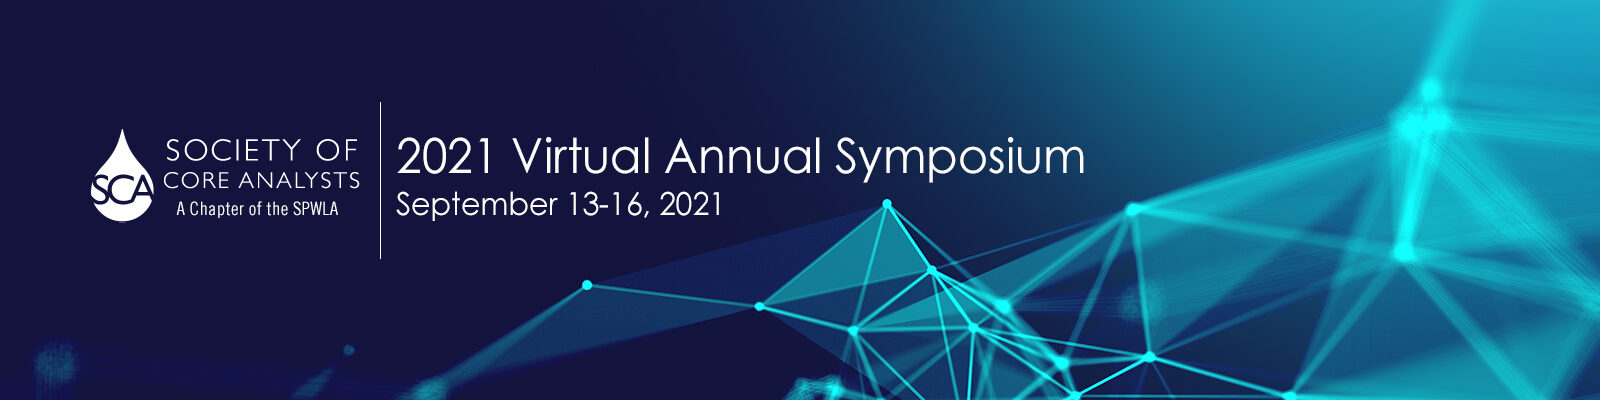 SCA Annual Symposium